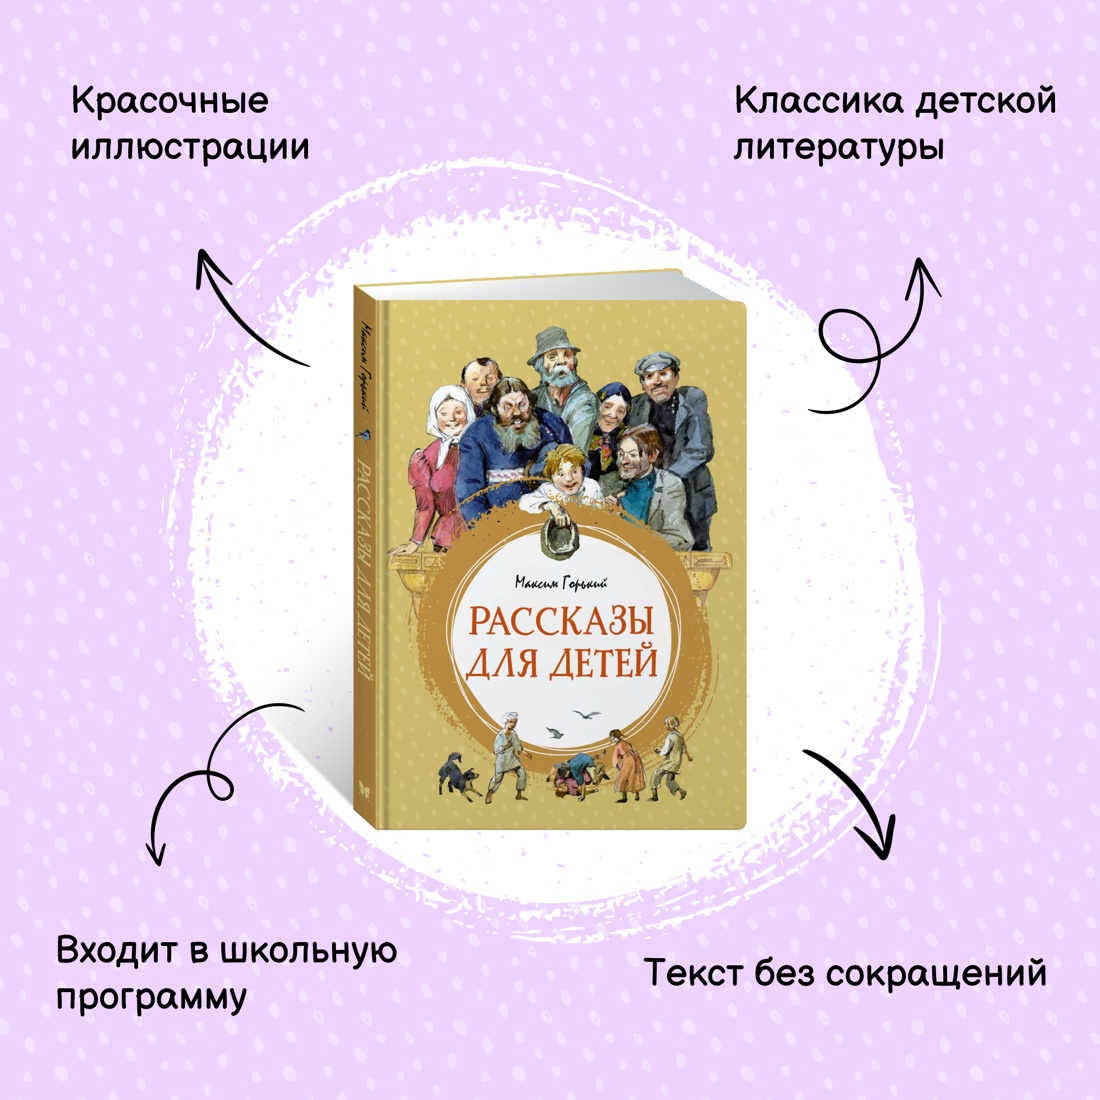 Промо материал к книге "Рассказы для детей" №0